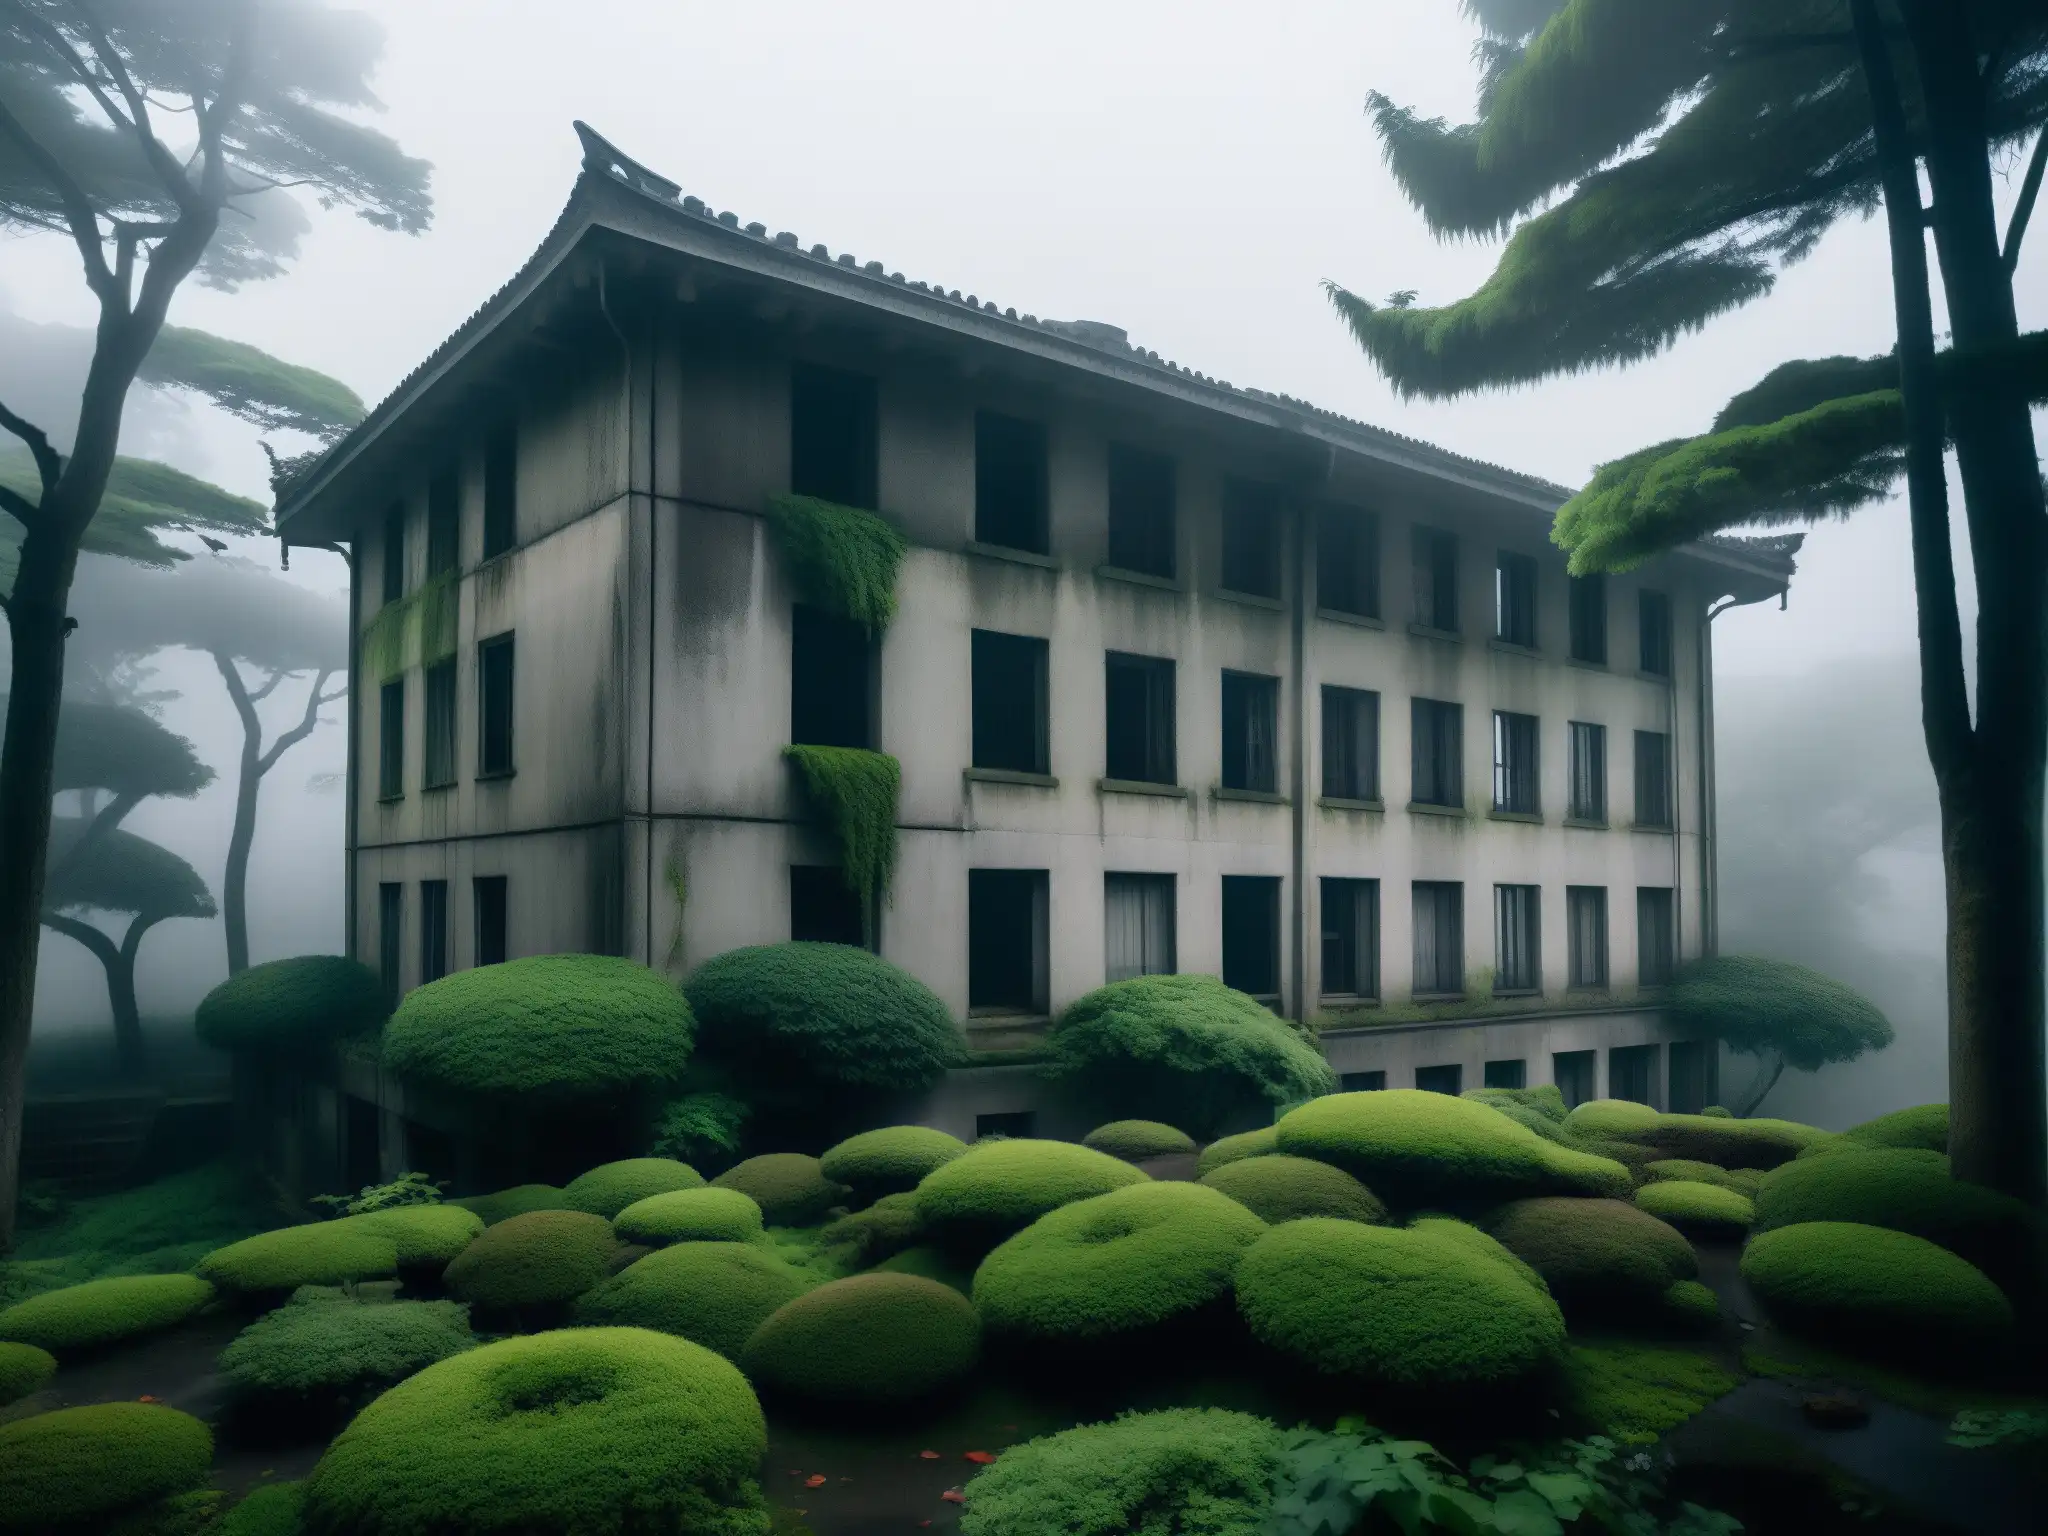 Un edificio coreano abandonado en la niebla, envuelto en misterio y fenómeno paranormal edificios coreanos